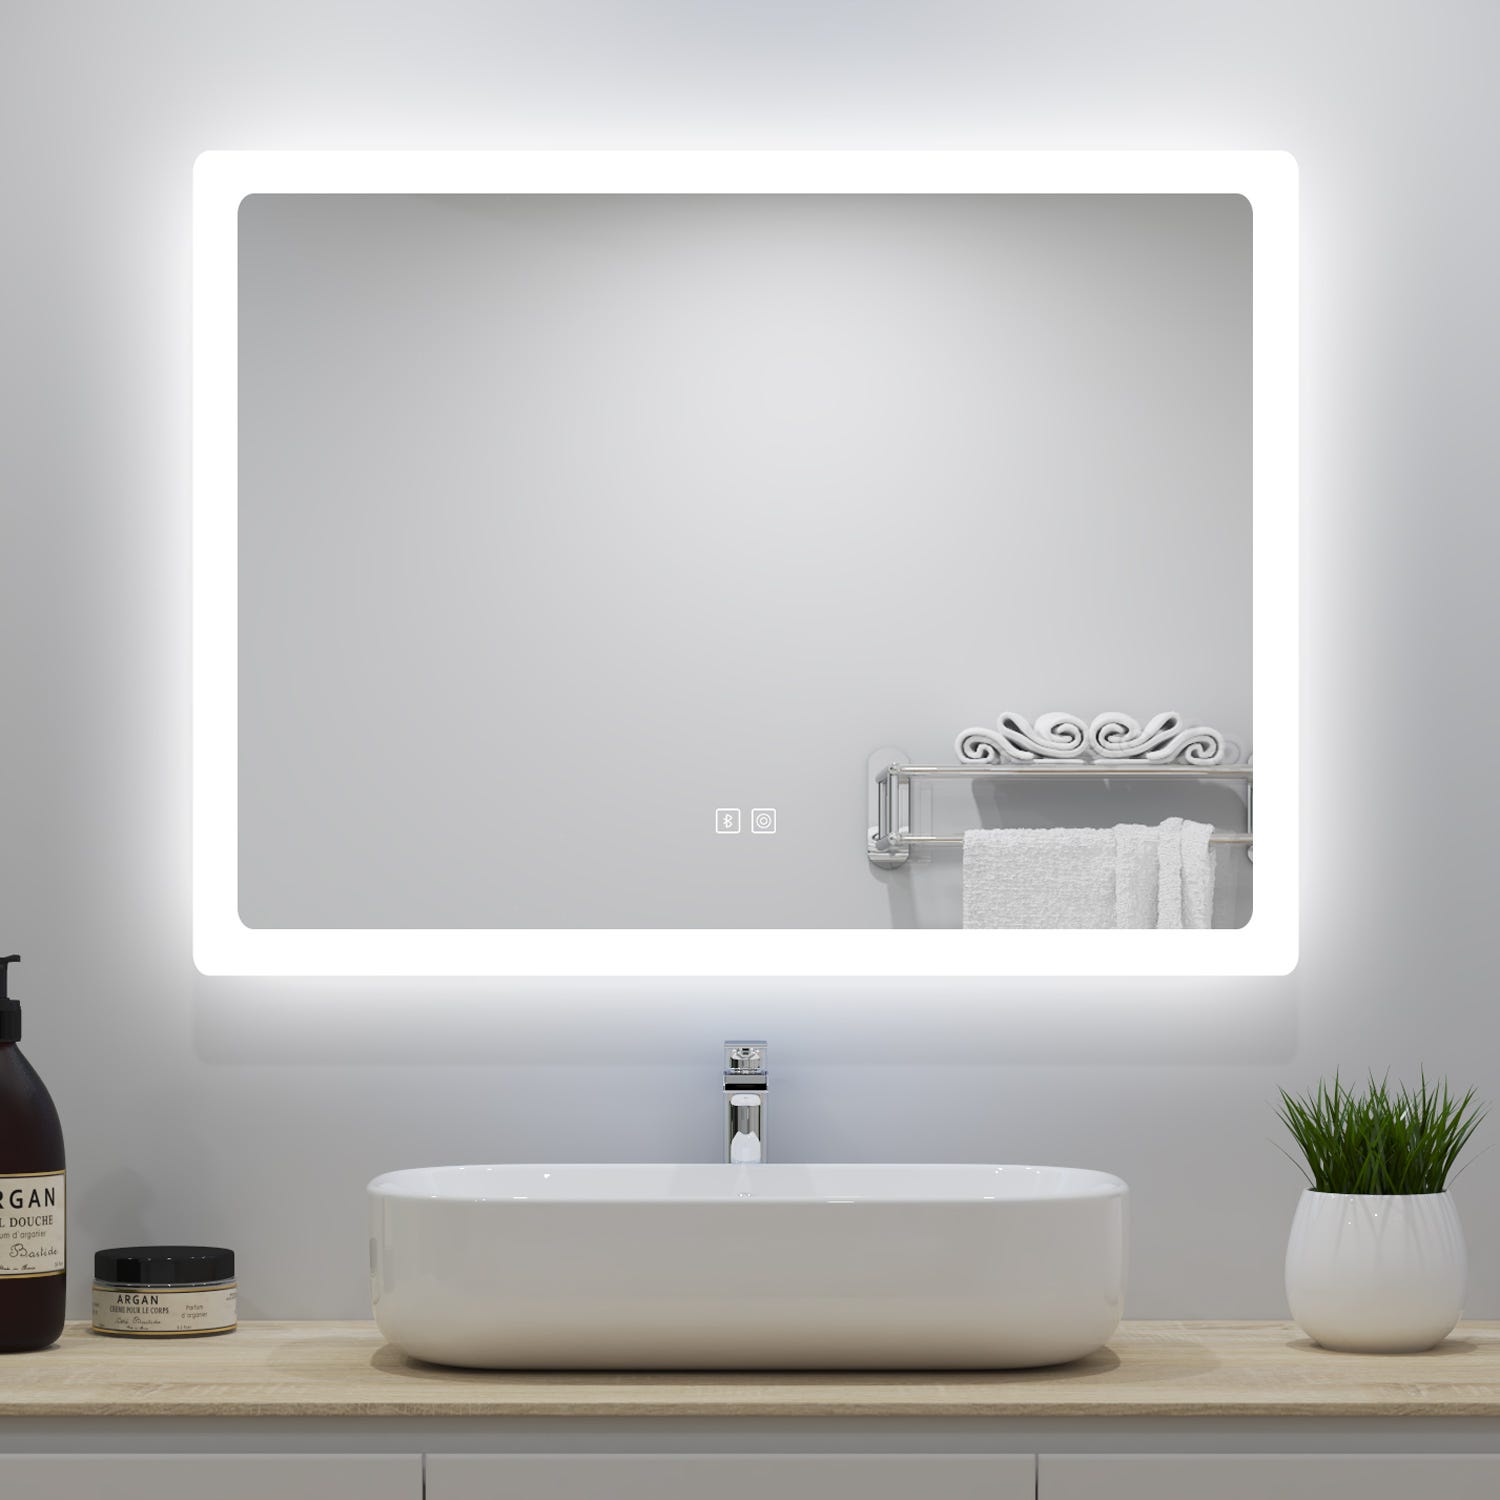 Apliques baño luz espejo blanco. Compra online, por teléfono o en tienda.